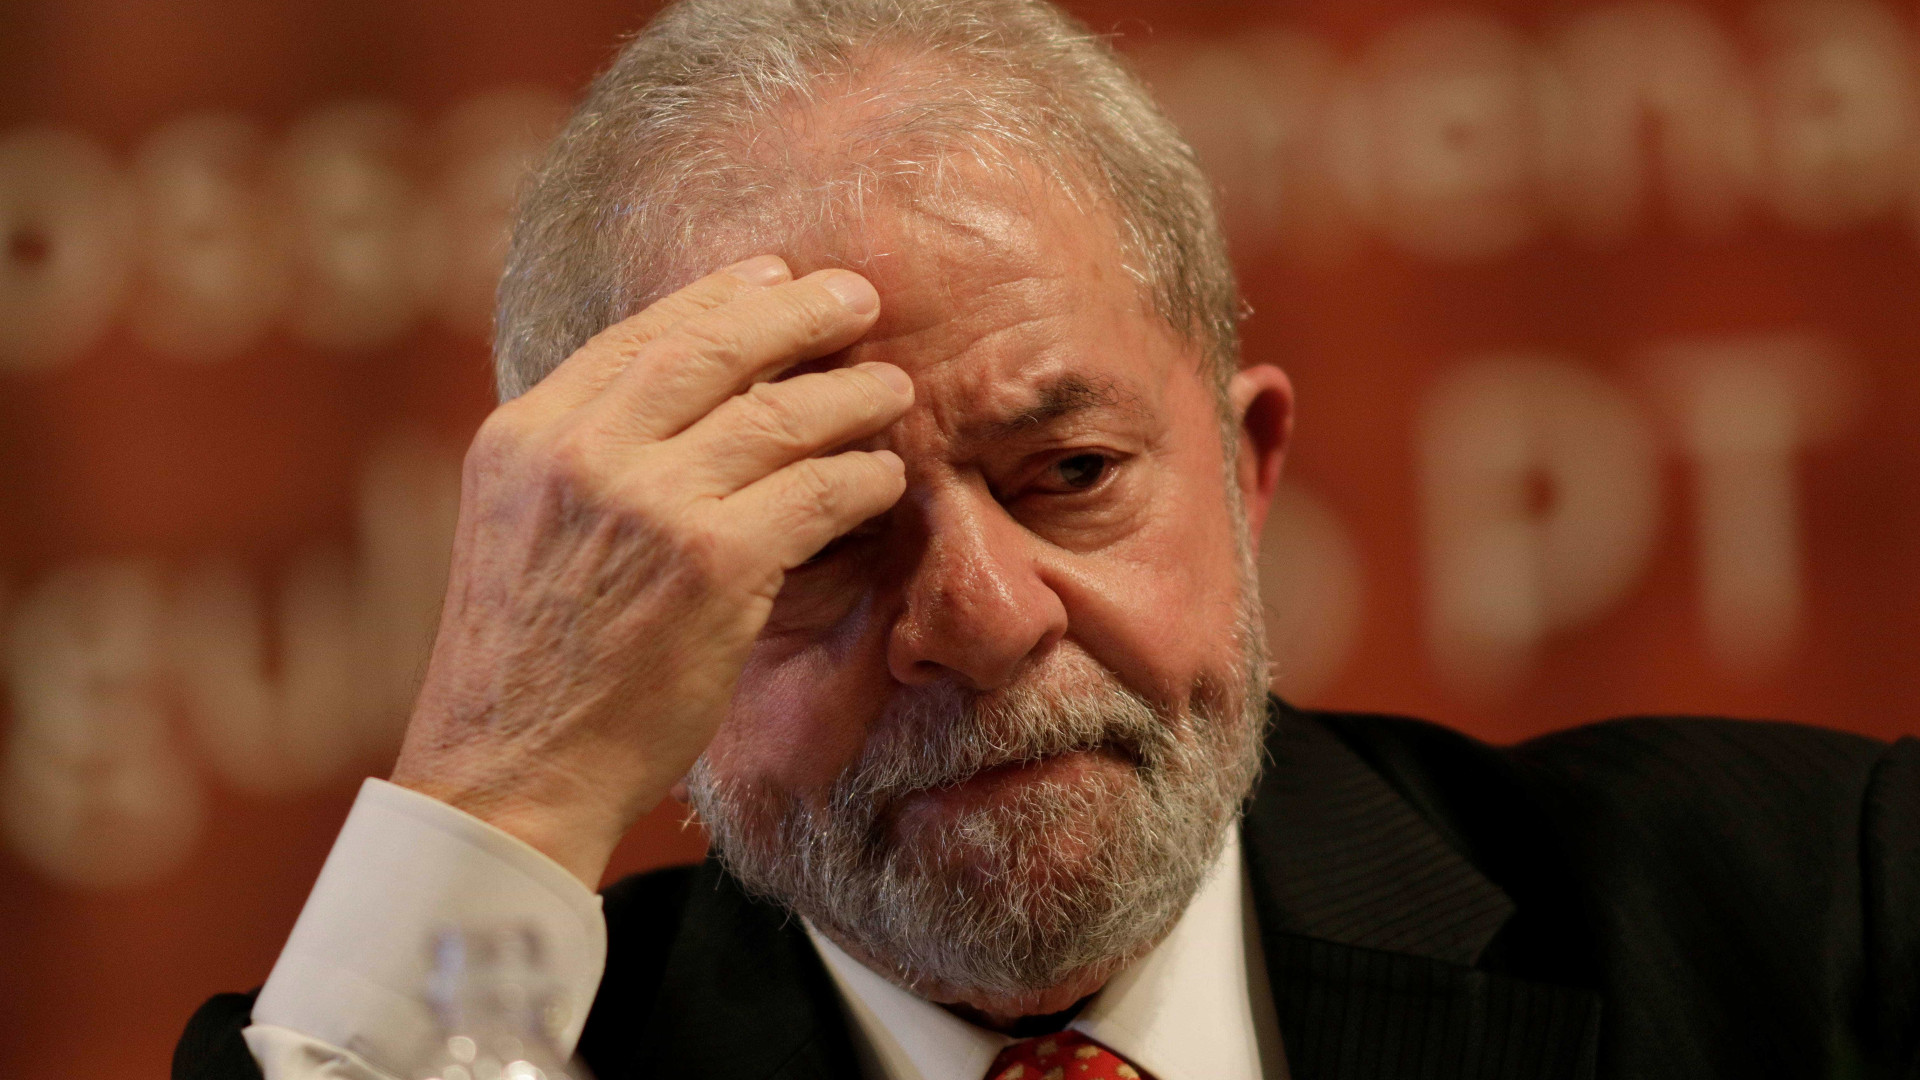 Justiça nega pedido de Lula para deixar prisão e ir a funeral de amigo